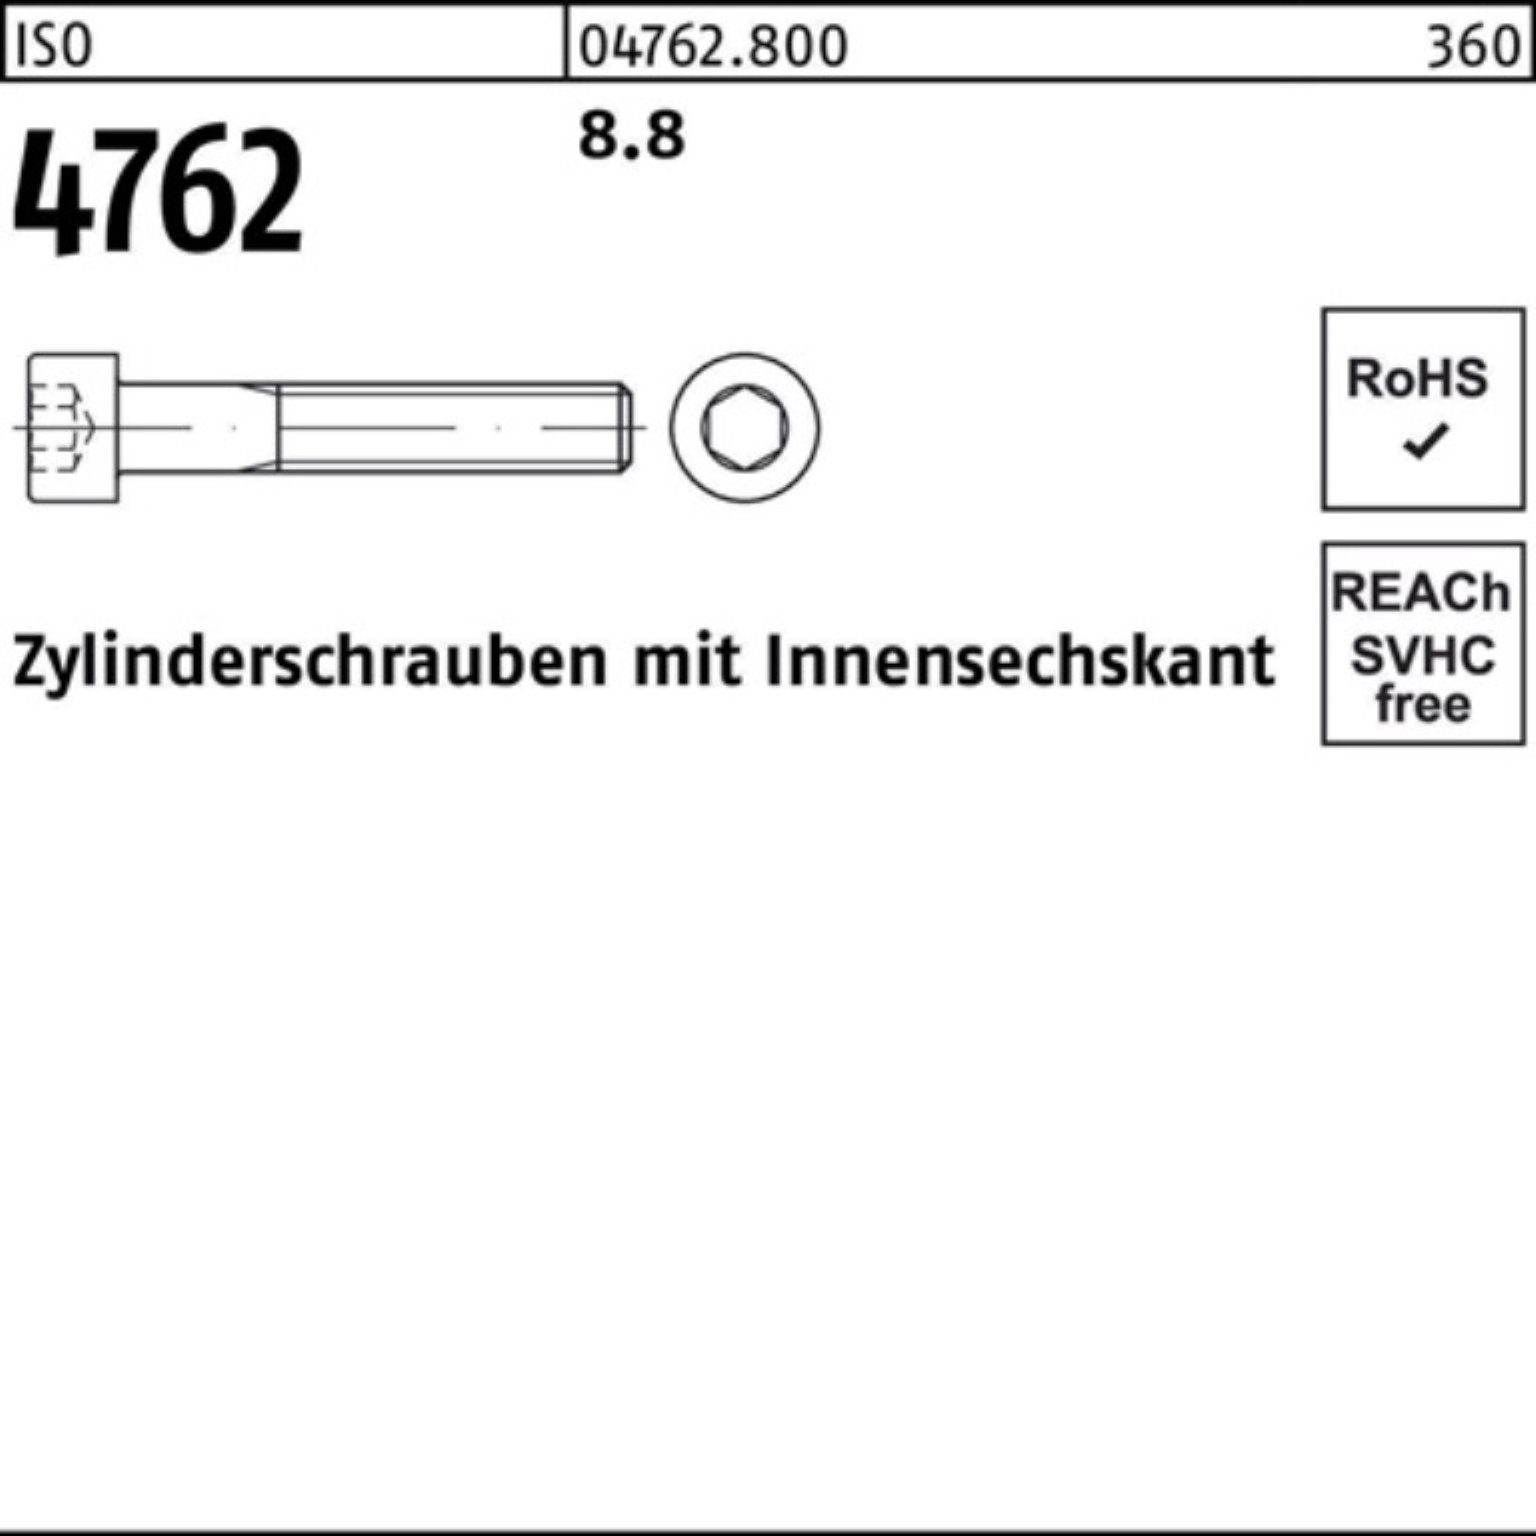 Zylinderschraube 30 Zylinderschraube Stück Innen-6kt M16x 100er Reyher 4762 50 8.8 I ISO Pack